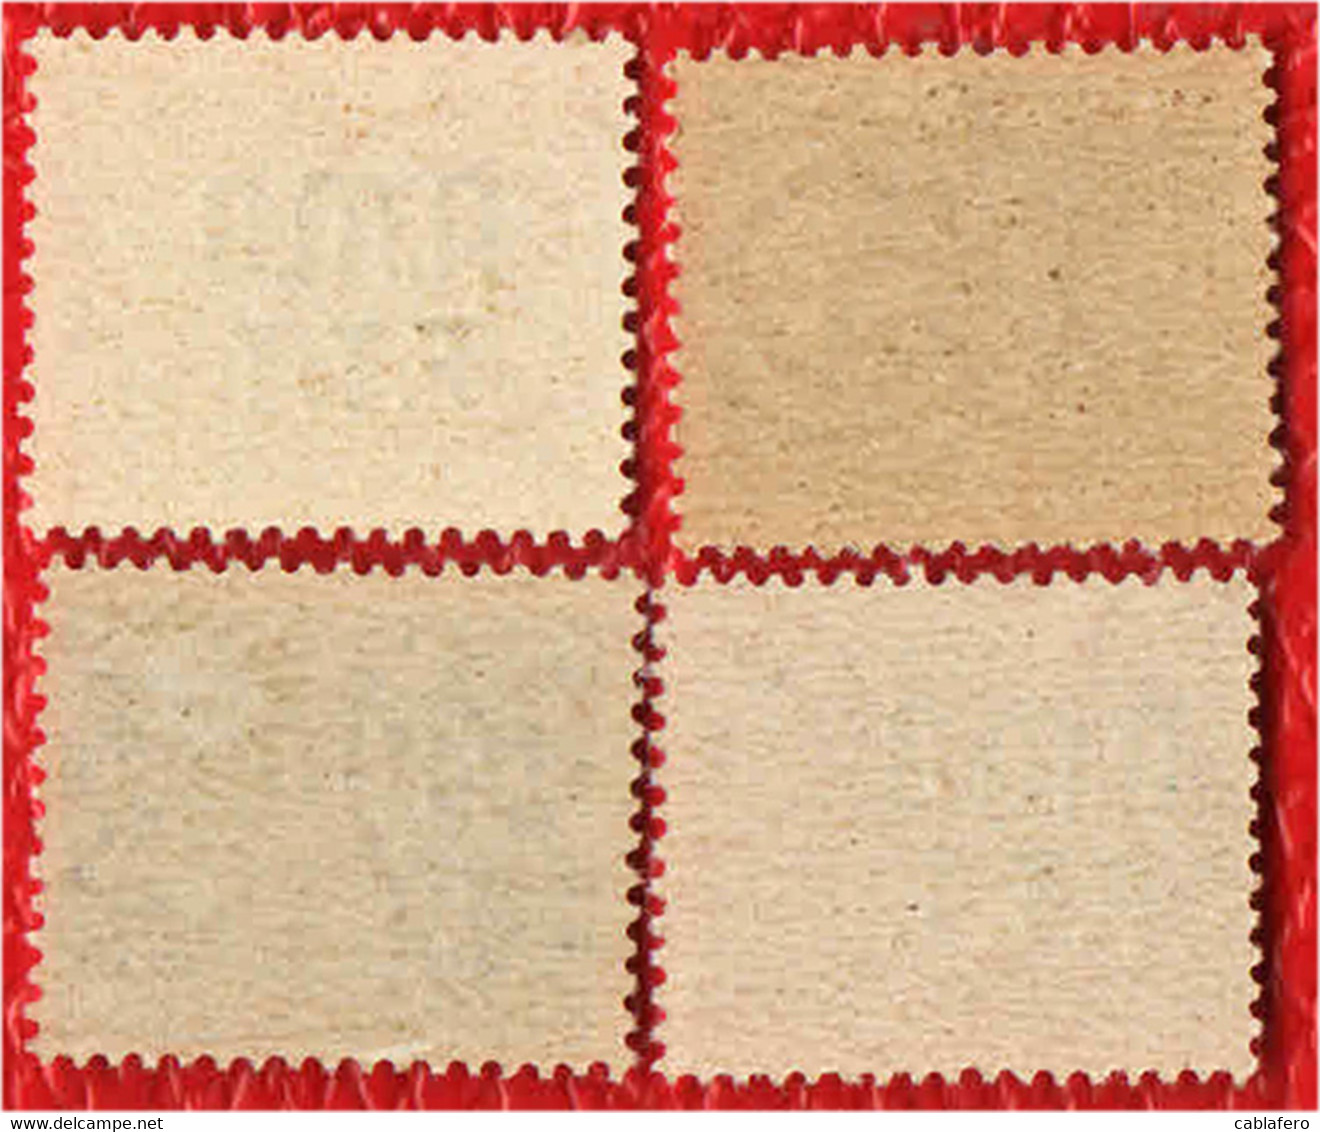 TRIESTE - AMGFTT - 1947 - SEGNATASSE DEL REGNO CON SOVRASTAMPA SU DUE RIGHE - MNH - Revenue Stamps